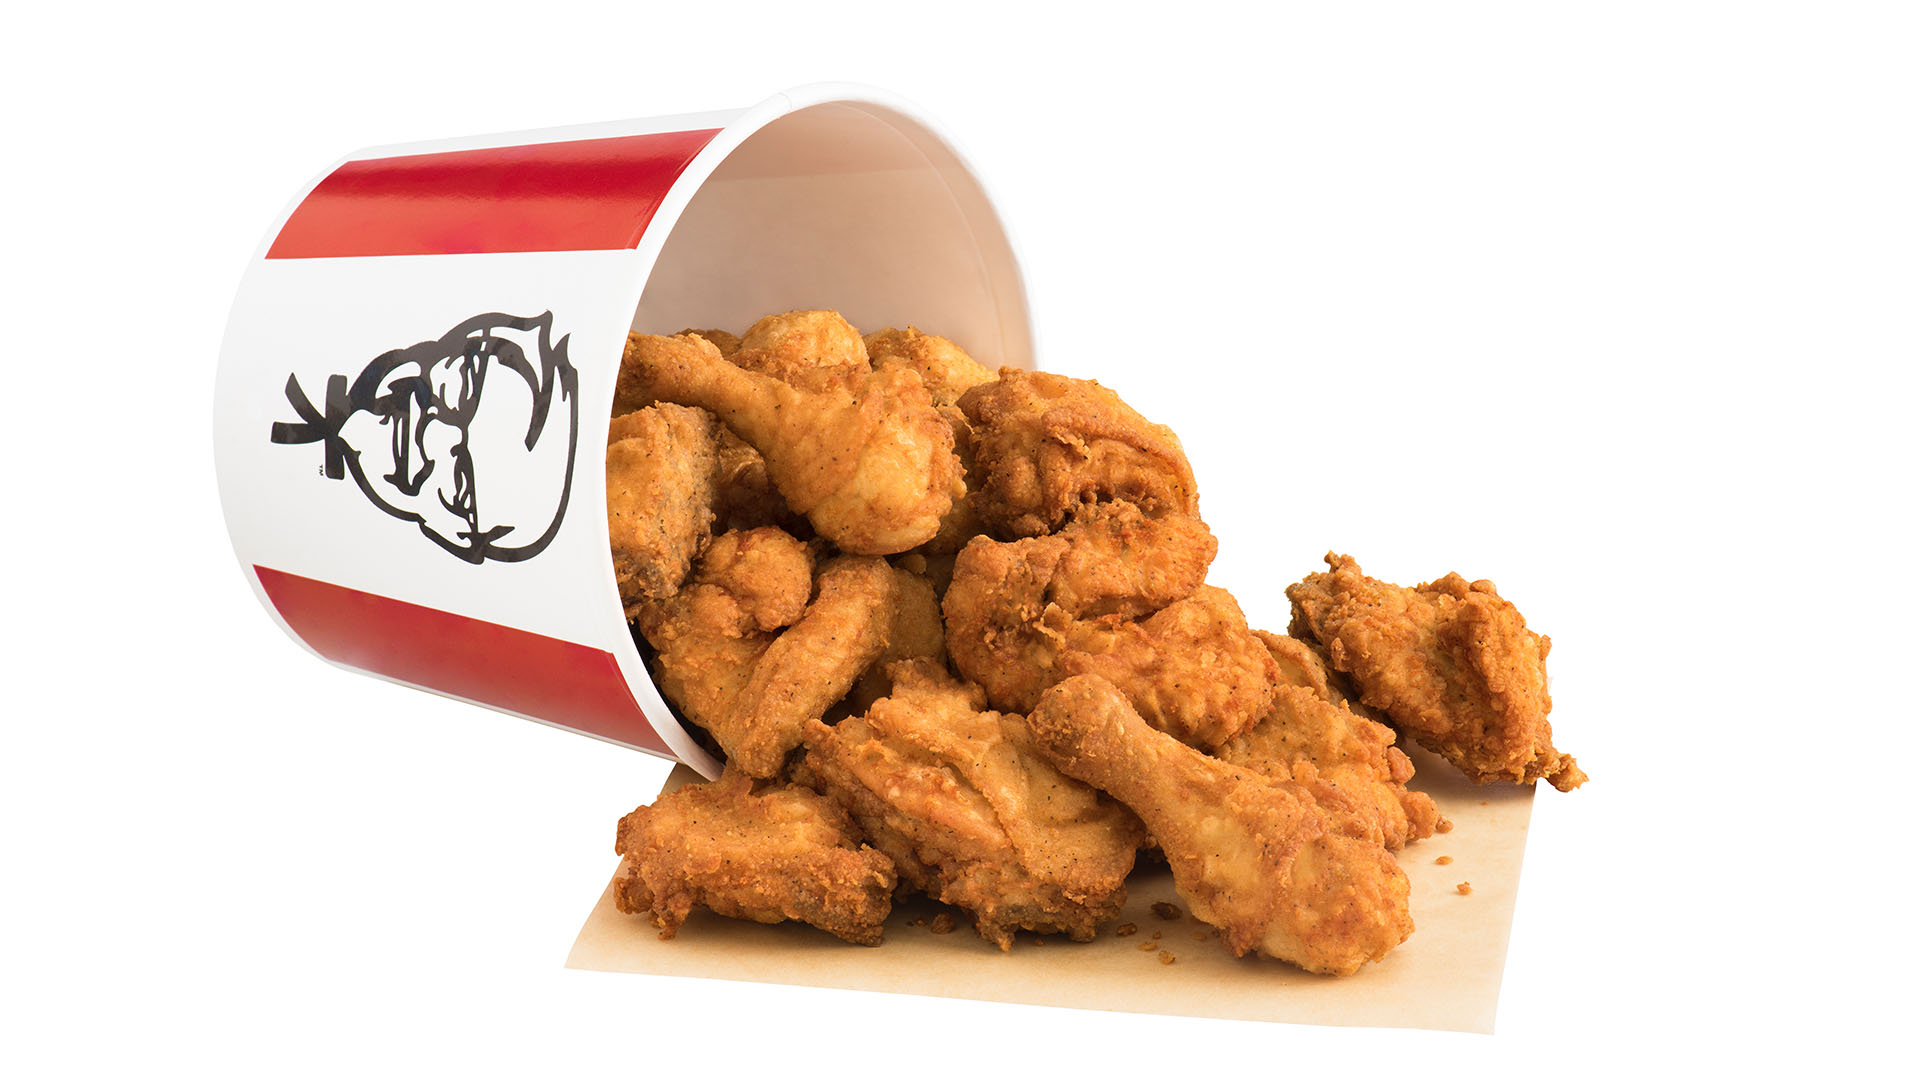 KFC Bucket 20. KFC Chicken.